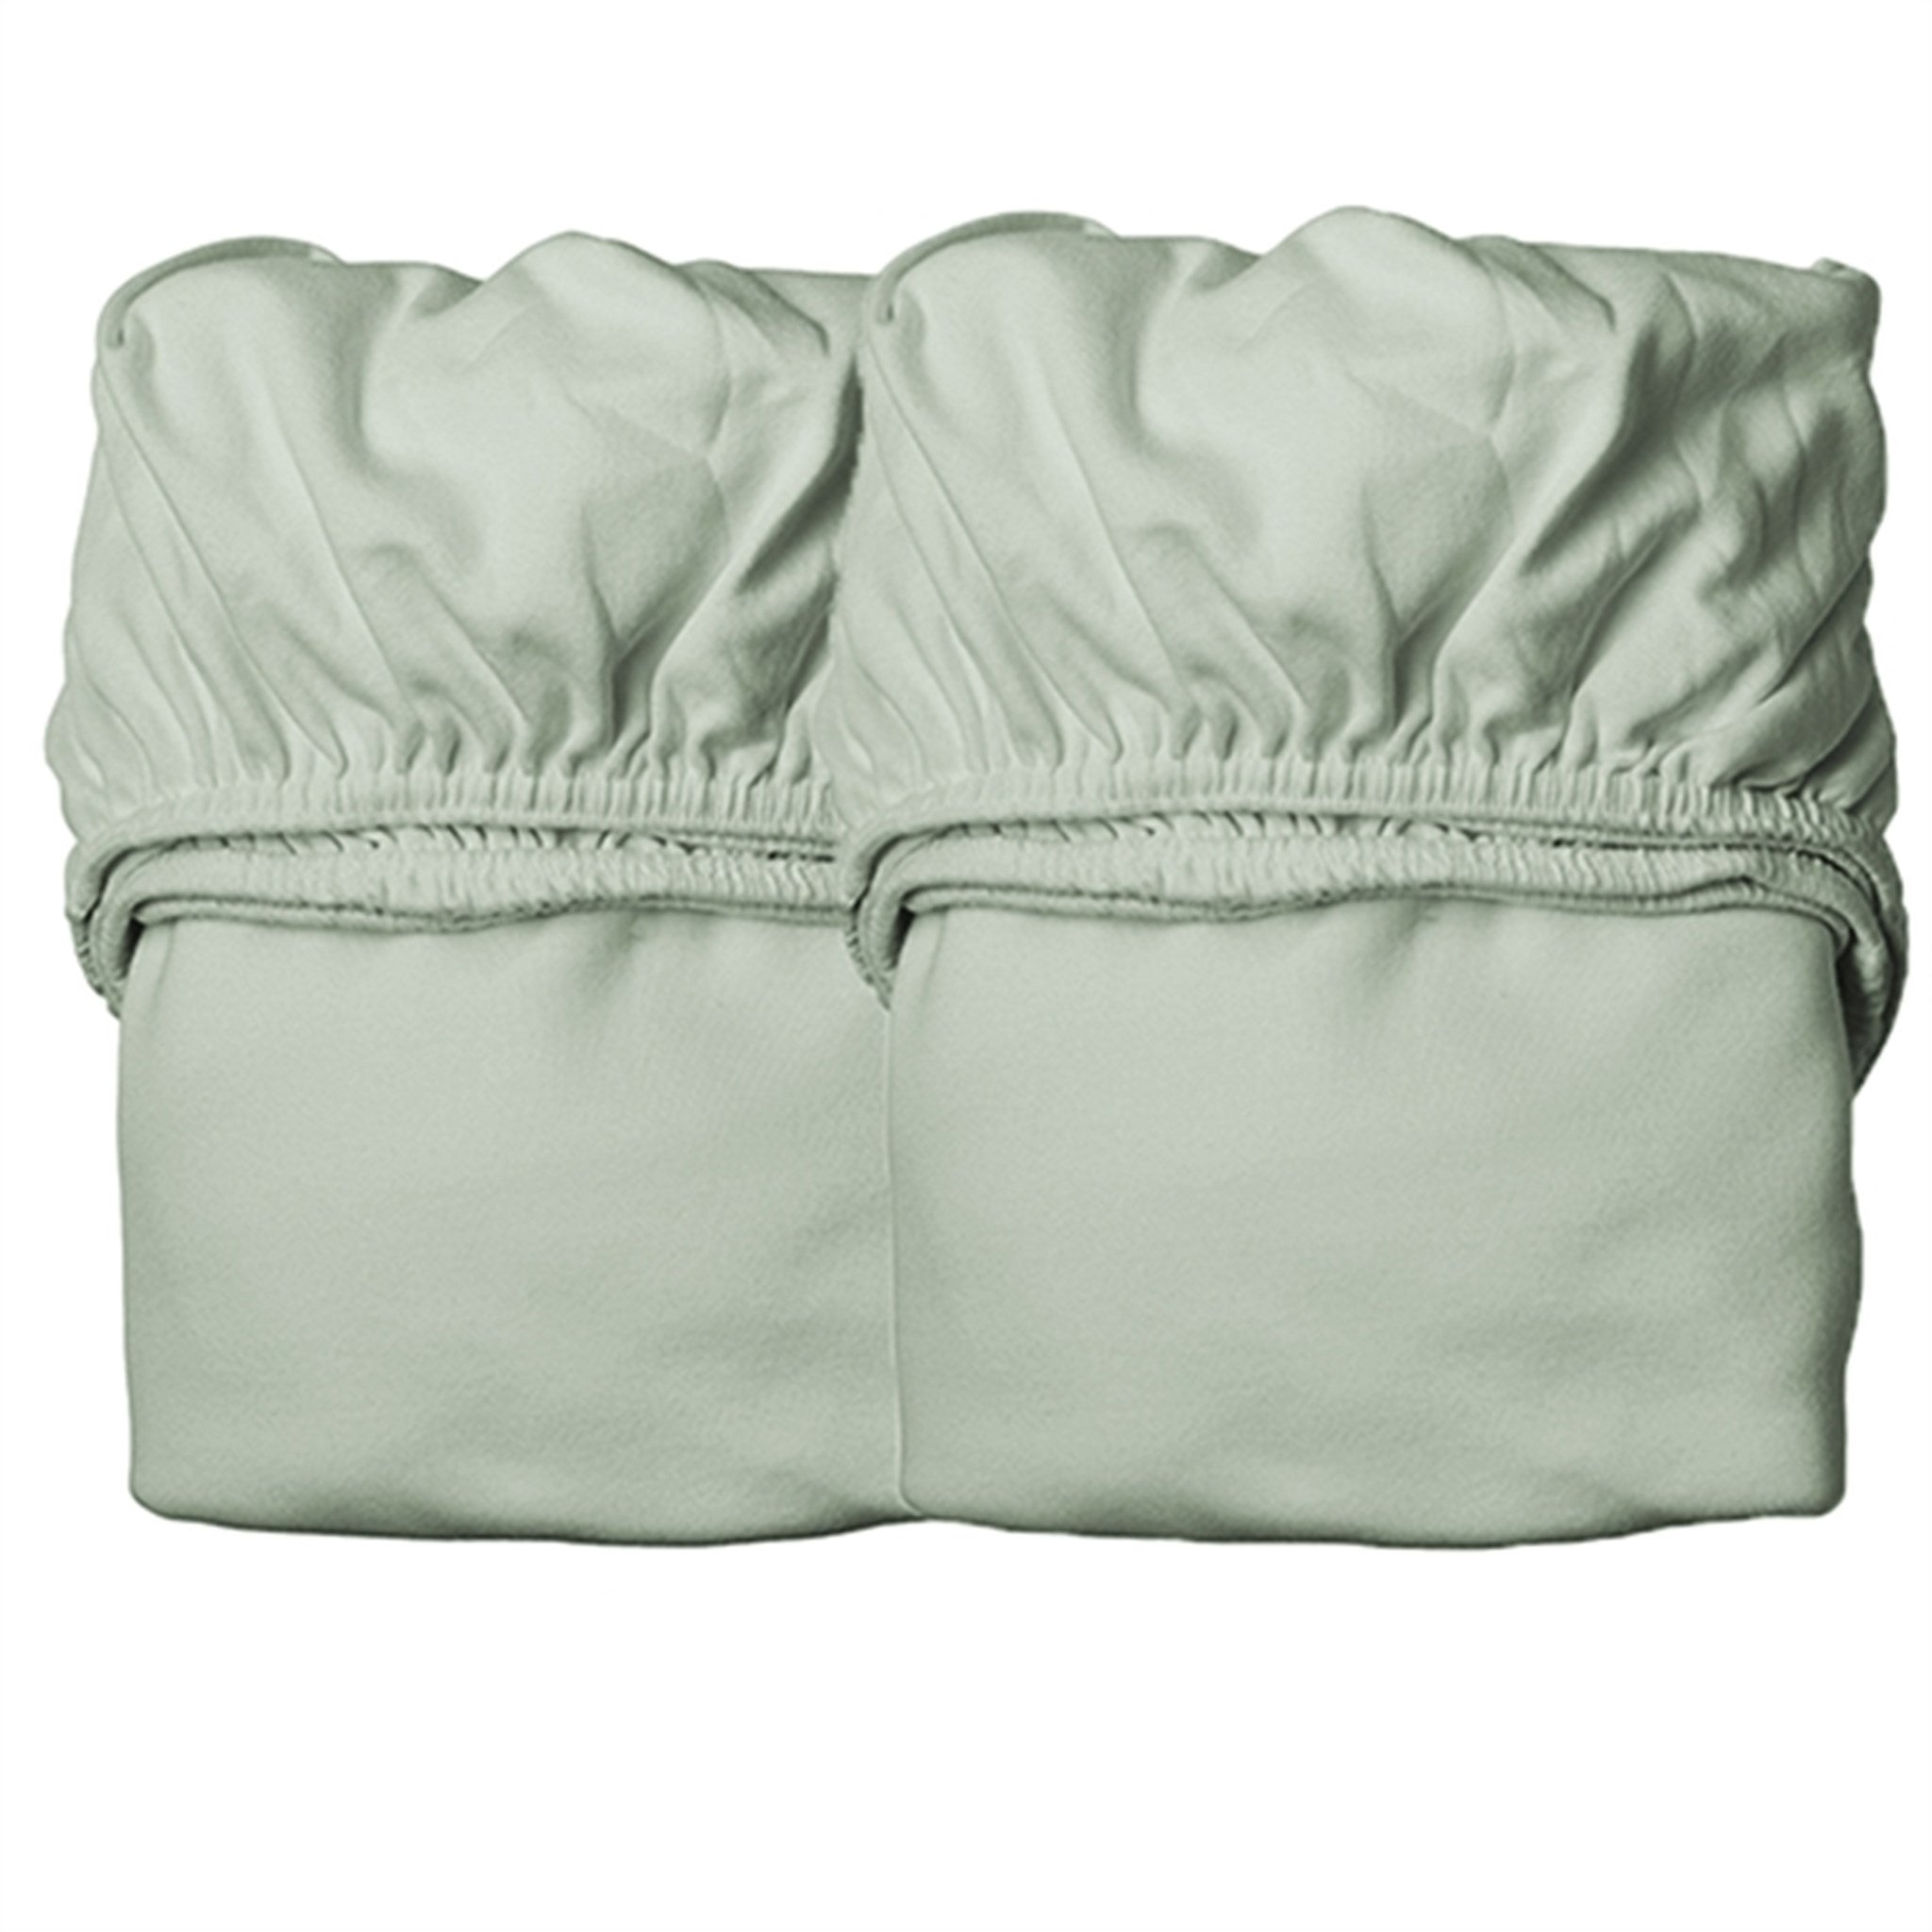 Leander Sheet for Baby Bed 2-Pack Sage Green